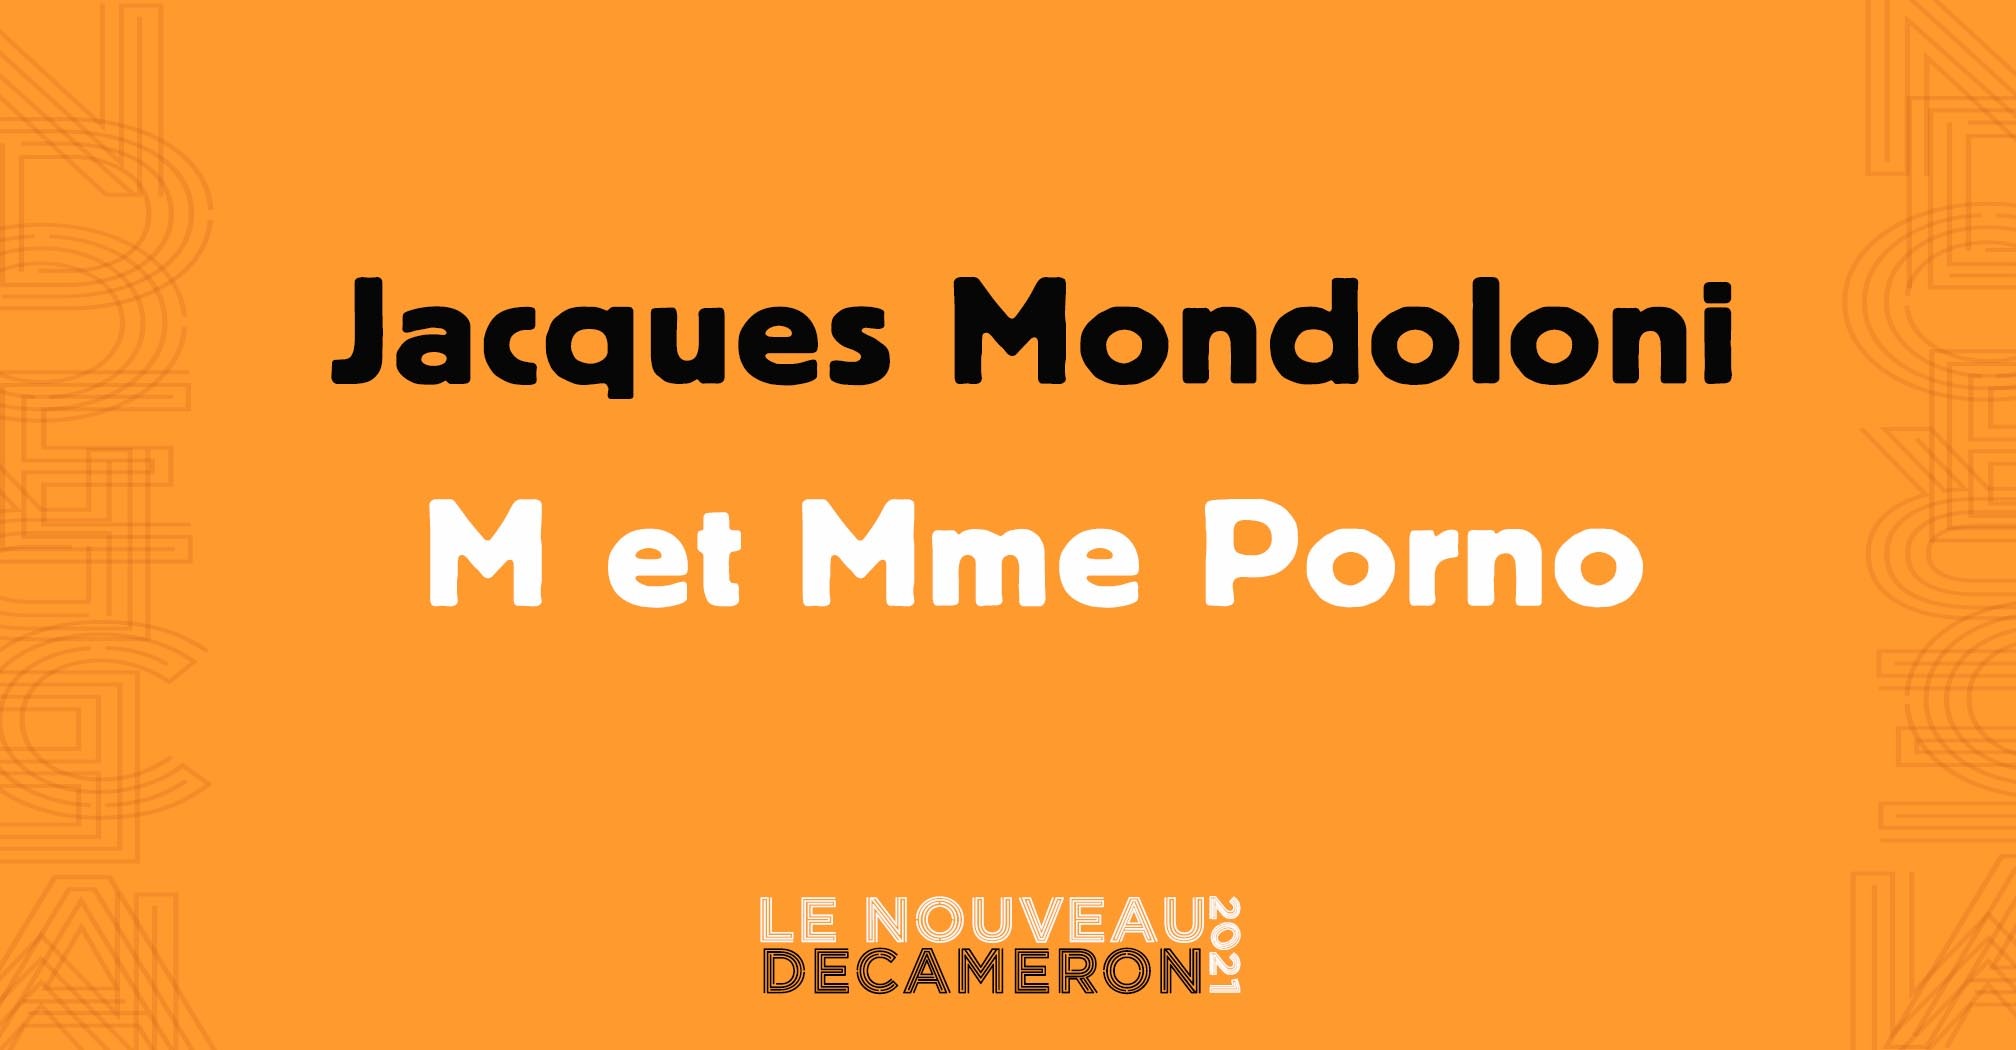 Jacques Mondoloni - M et Mme Porno image image